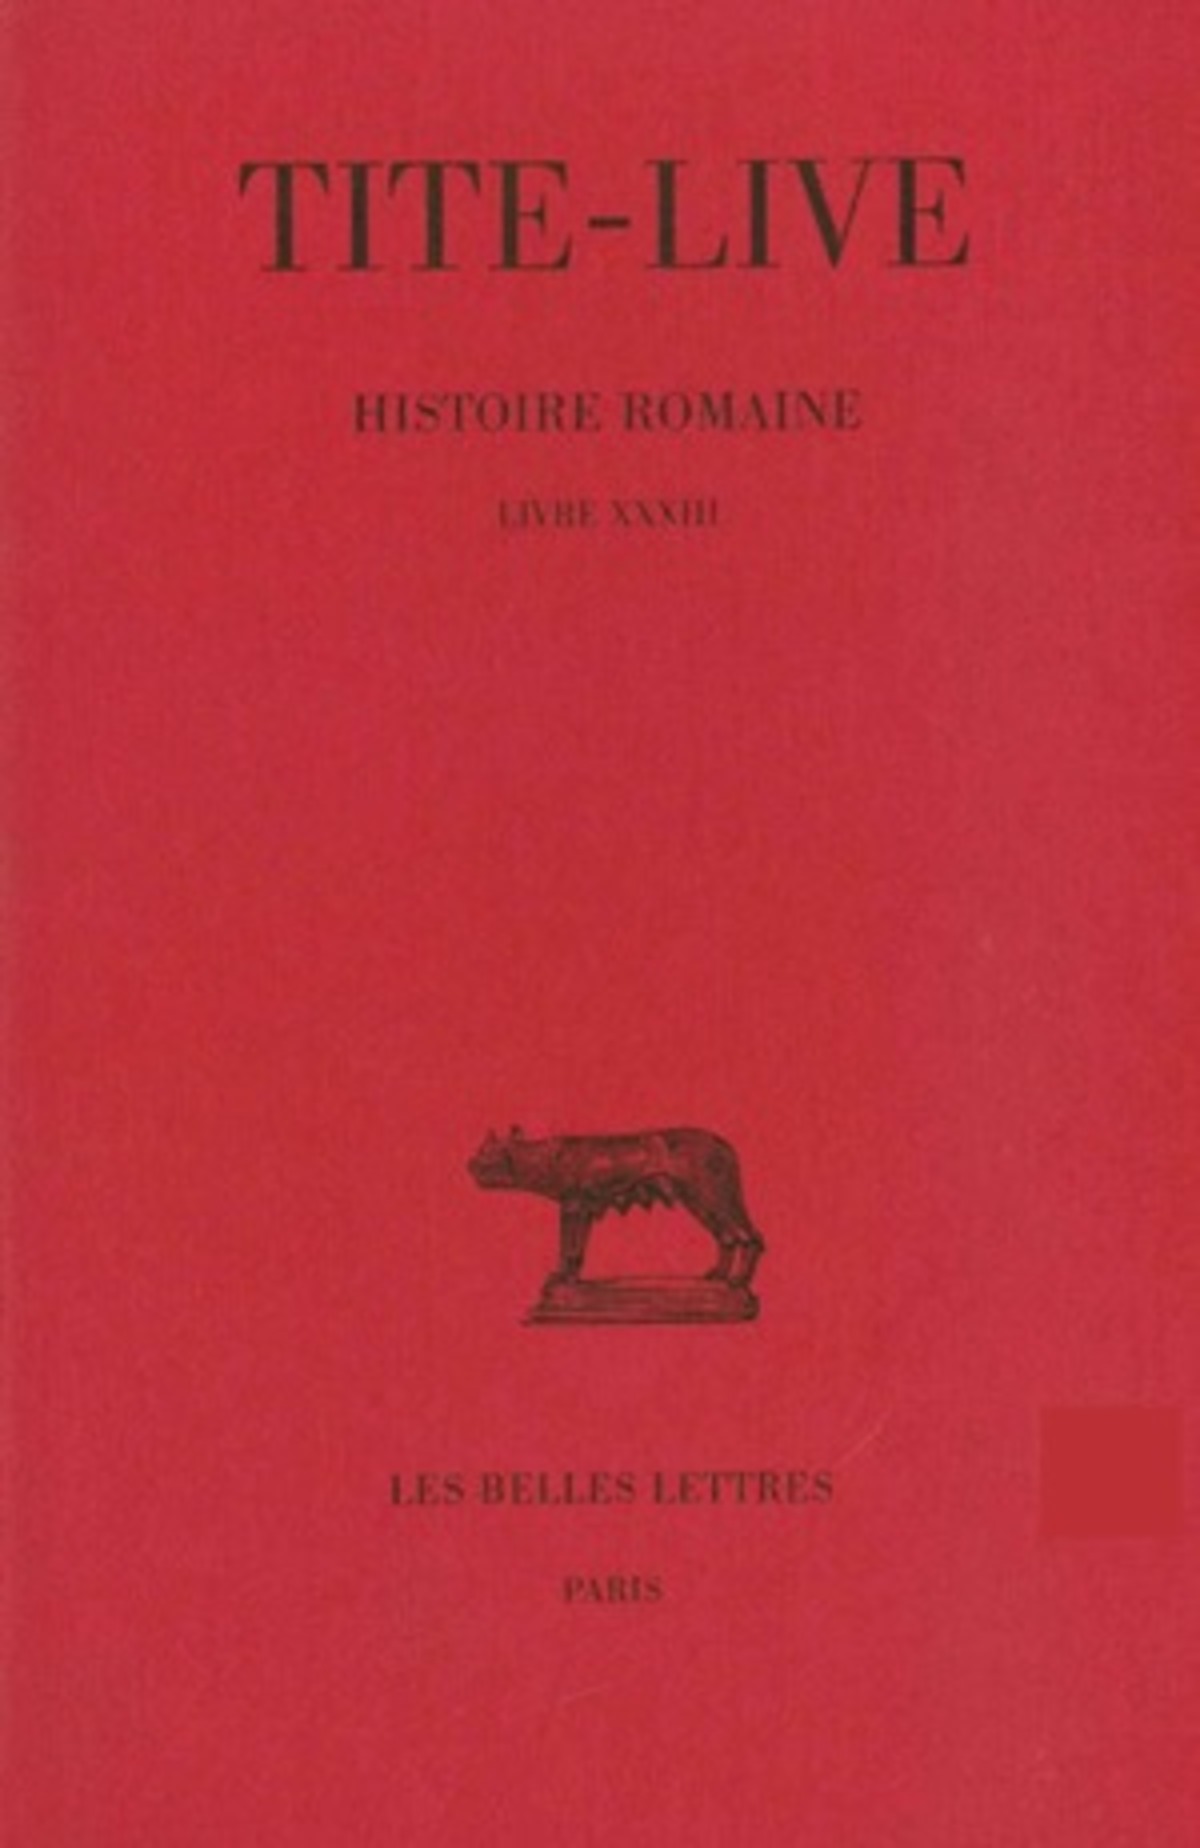 Histoire romaine. Tome XXIII : Livre XXXIII